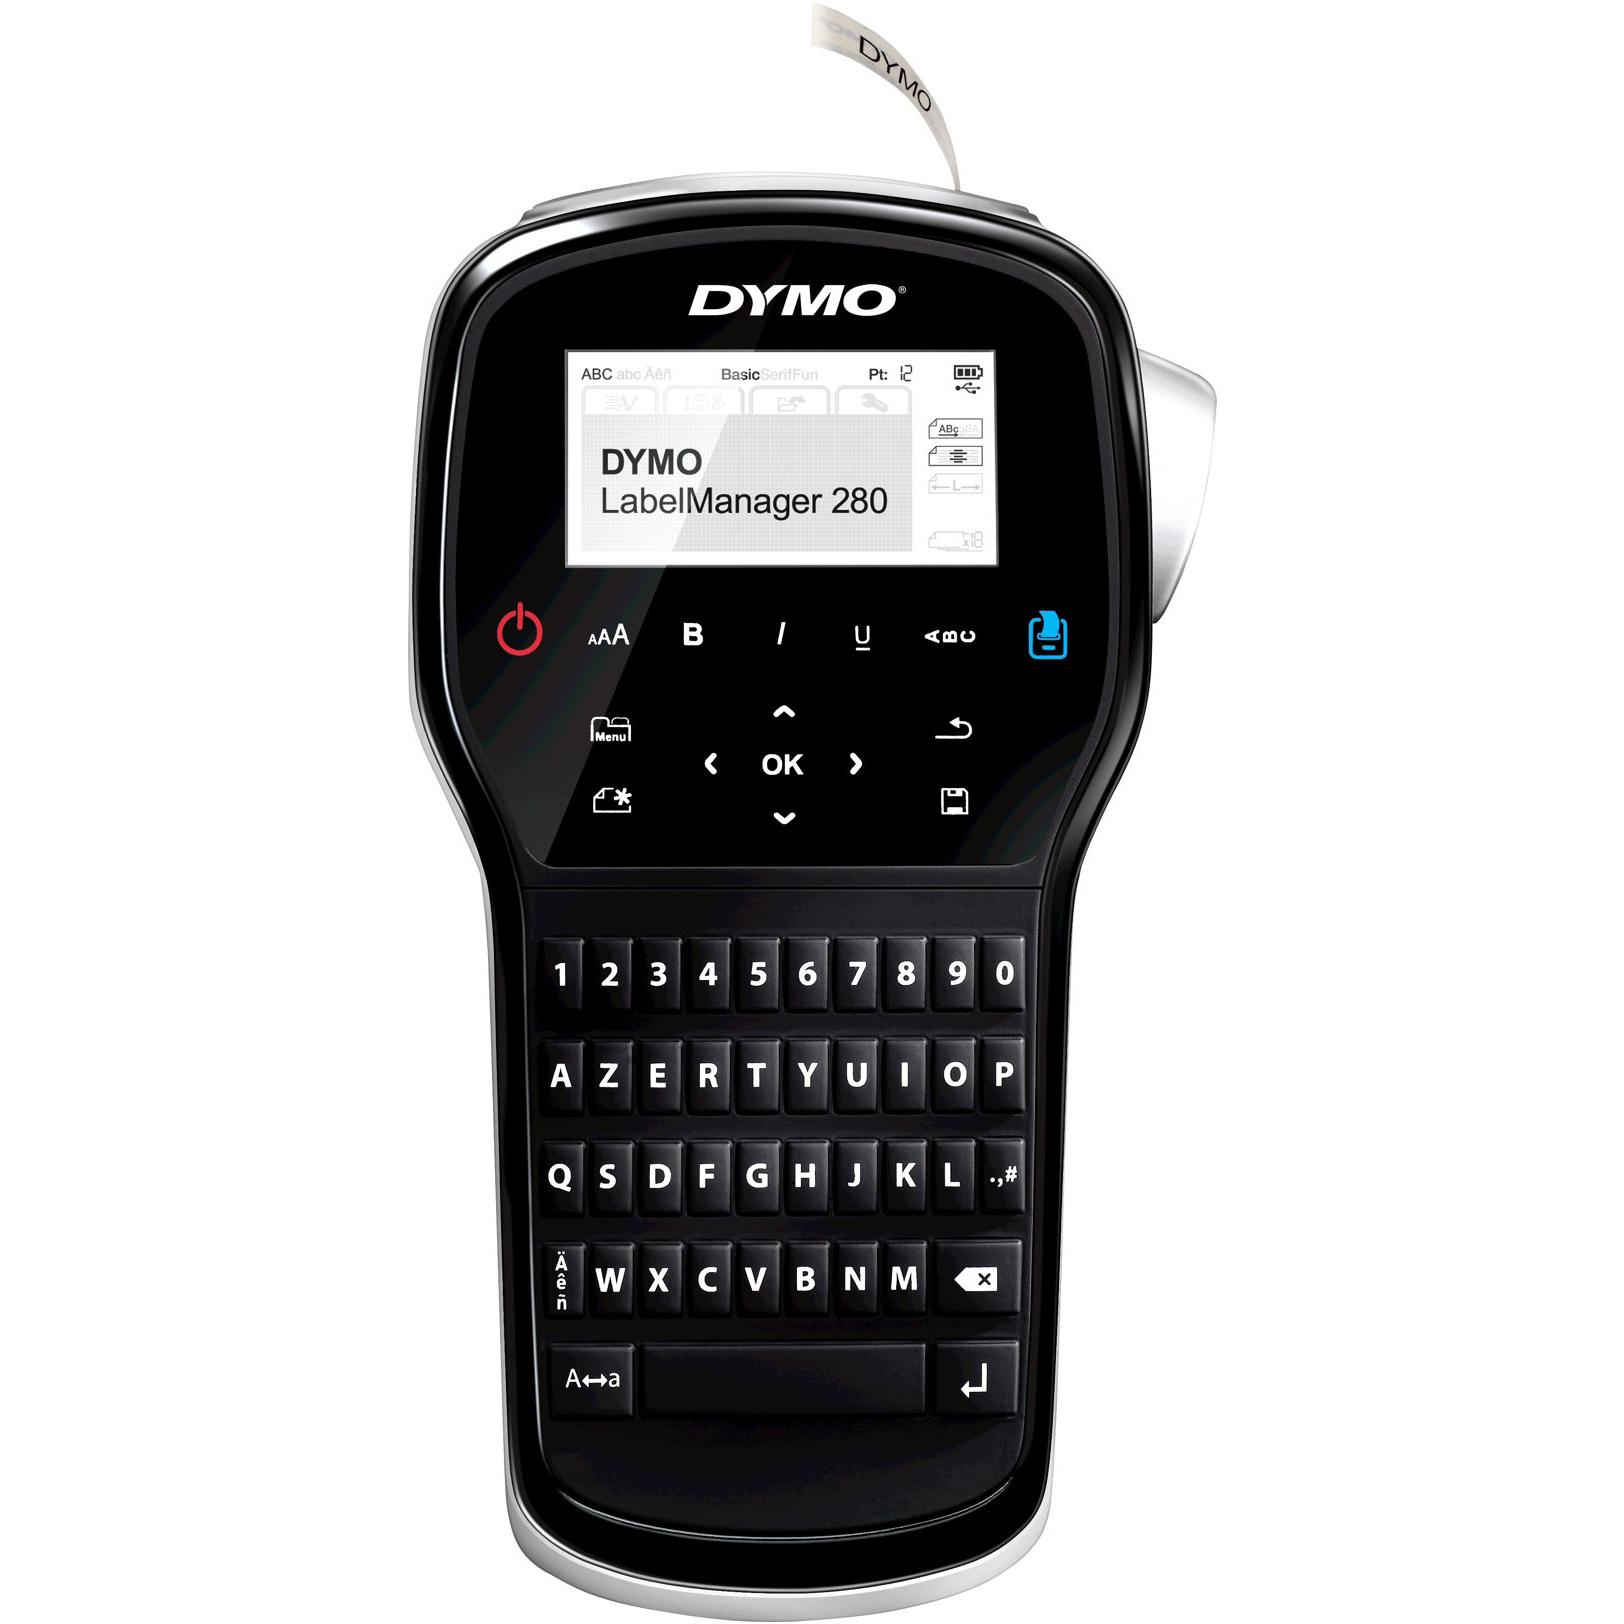 Original Dymo Labelmanager 280 Kitcase Handheld Label Printer Qwerty Keyboard Black/Silver  (2091152)